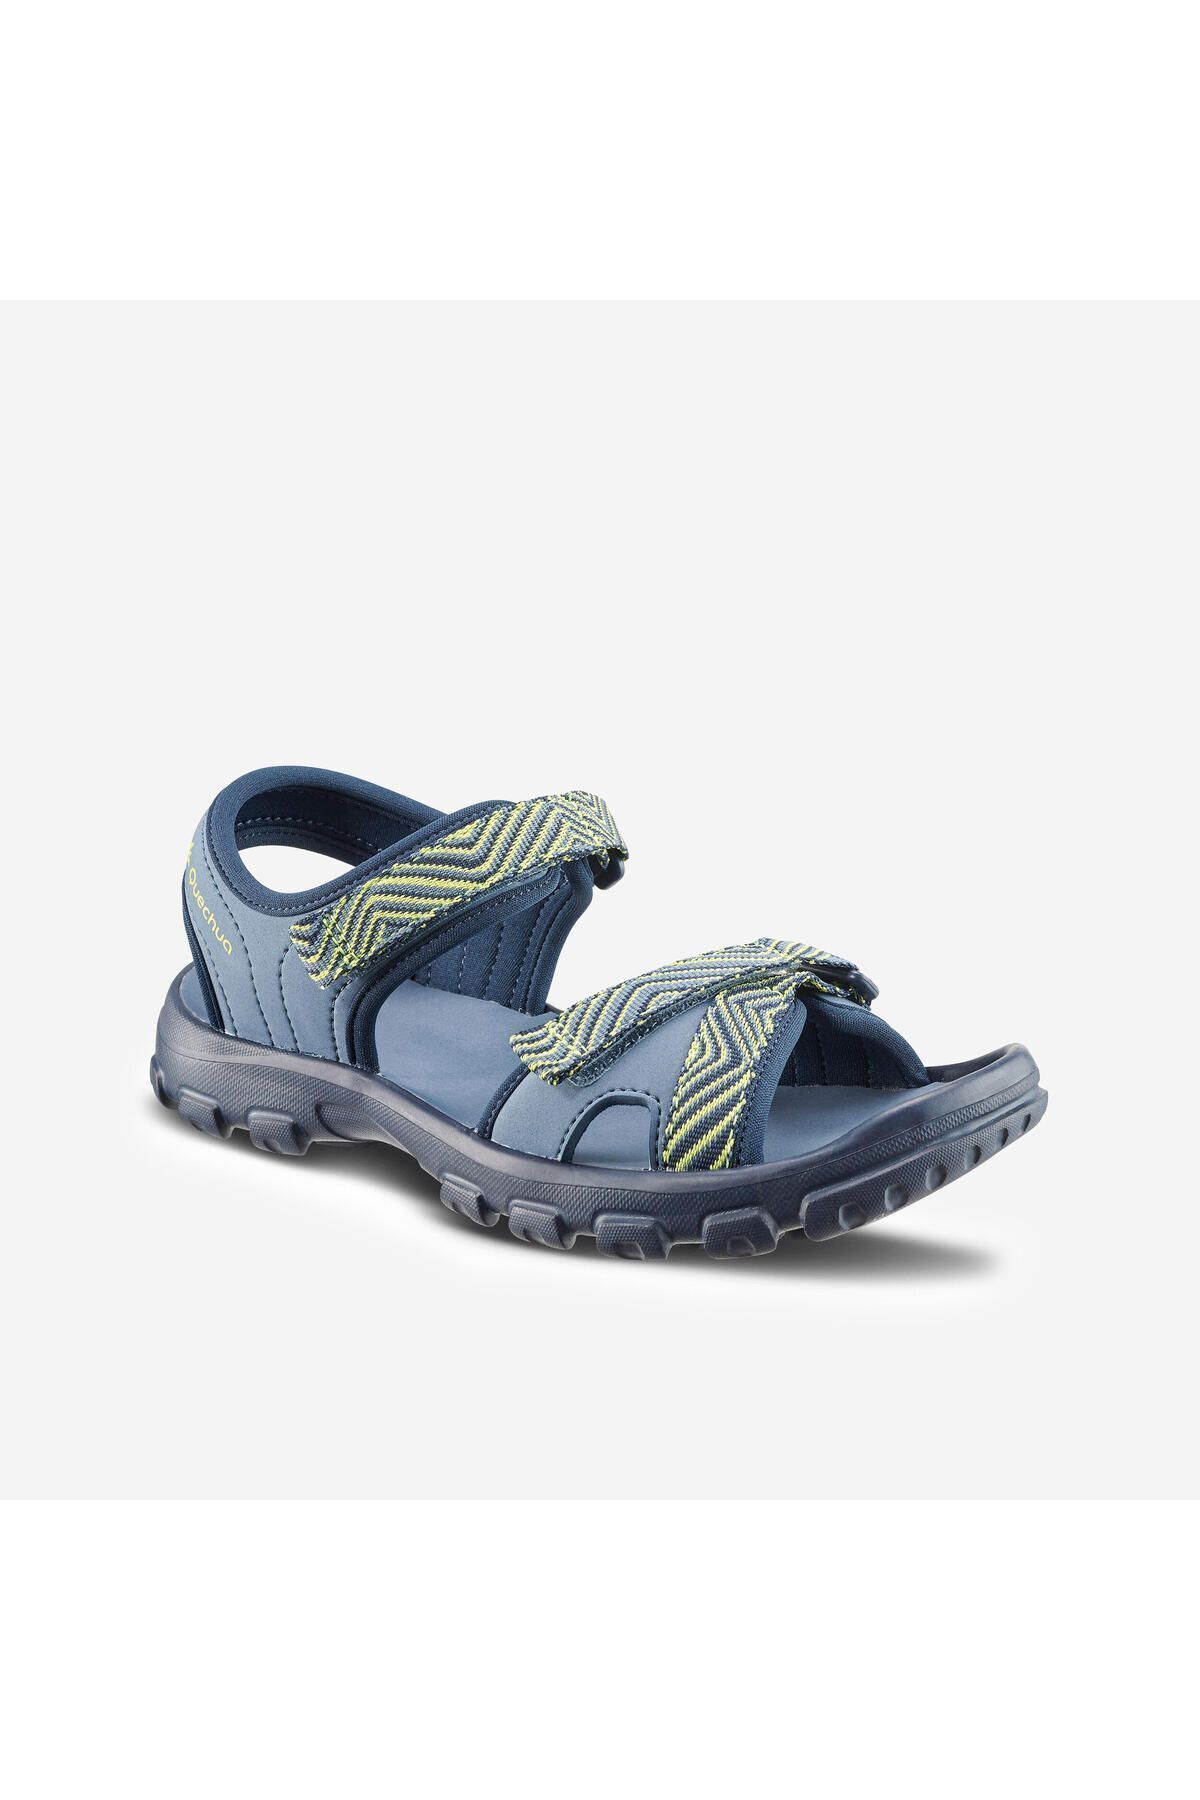 Decathlon Çocuk Sandalet - Mavi / Sarı - 32 / 37 - Mh100